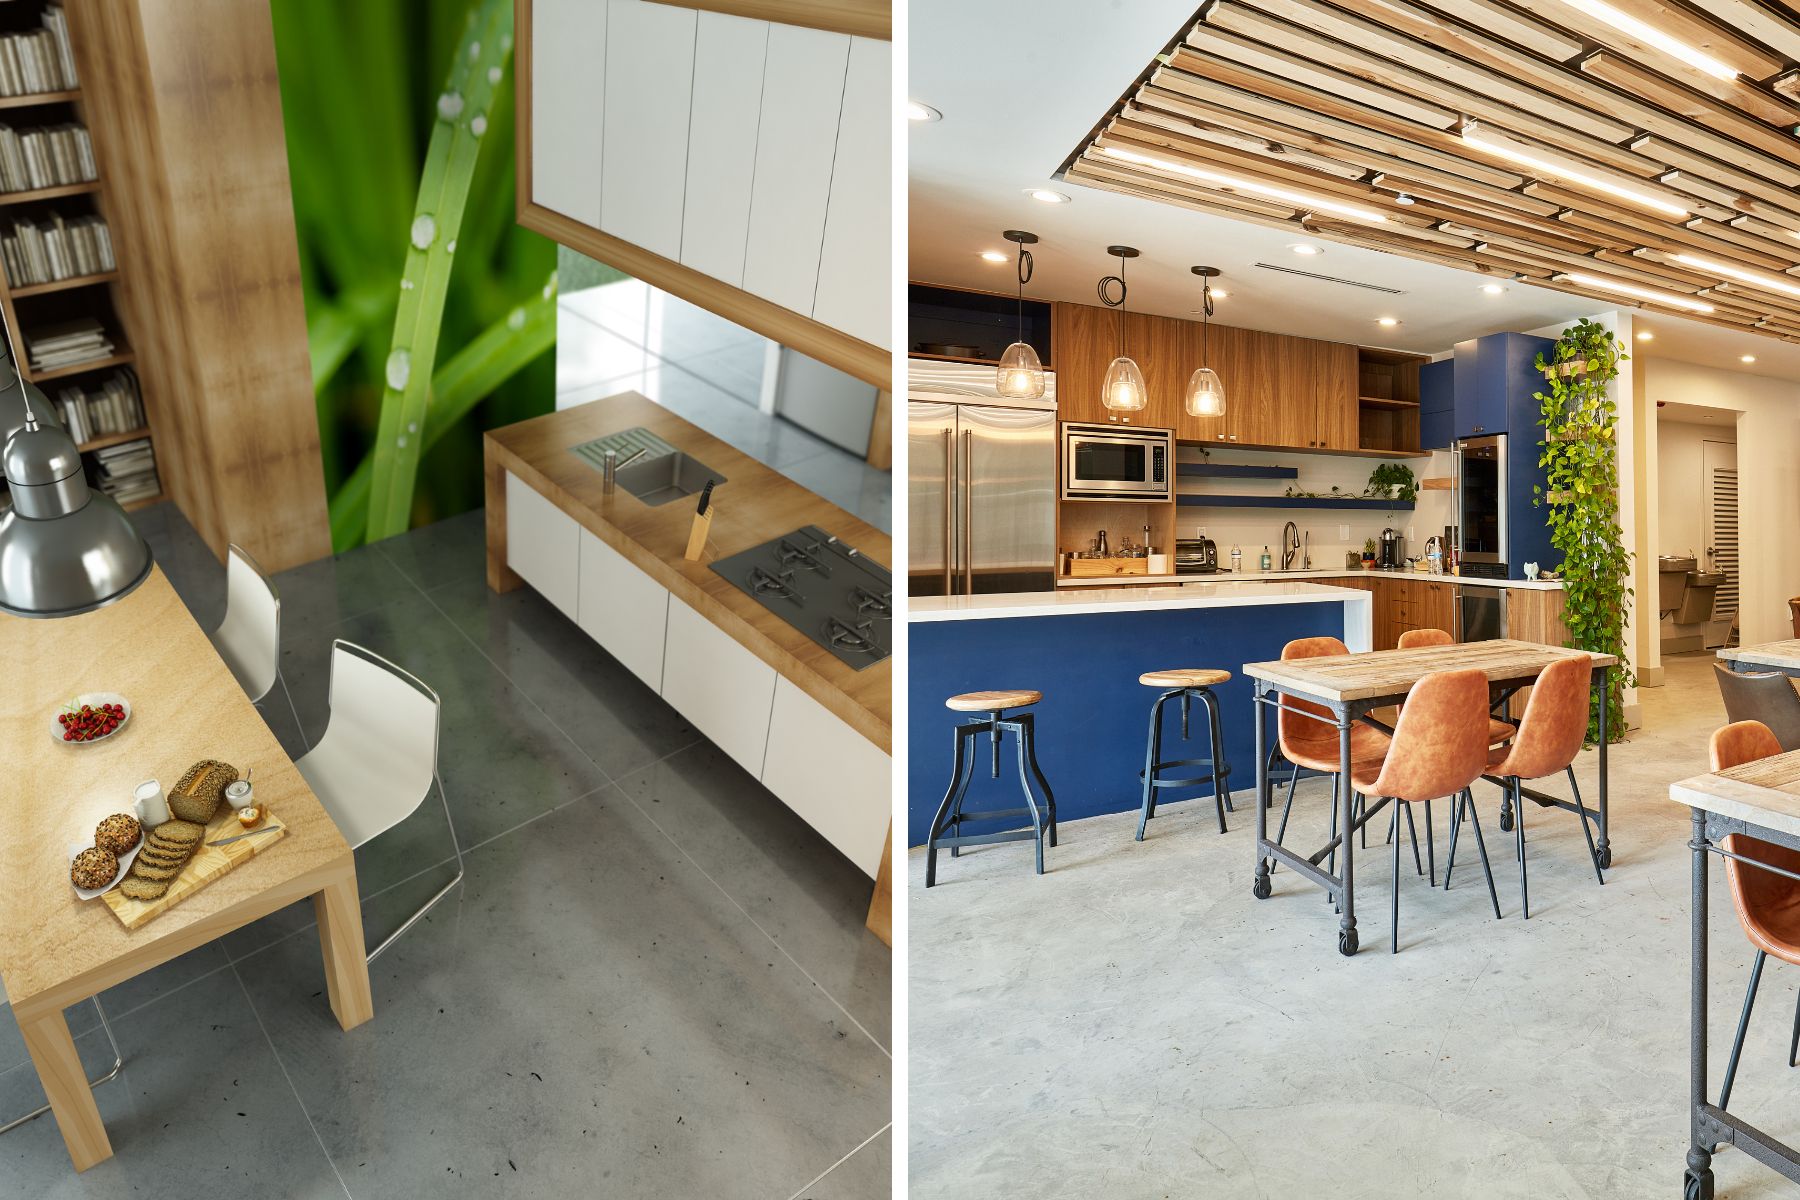 hiq-blog-interior-design-kitchen.jpg